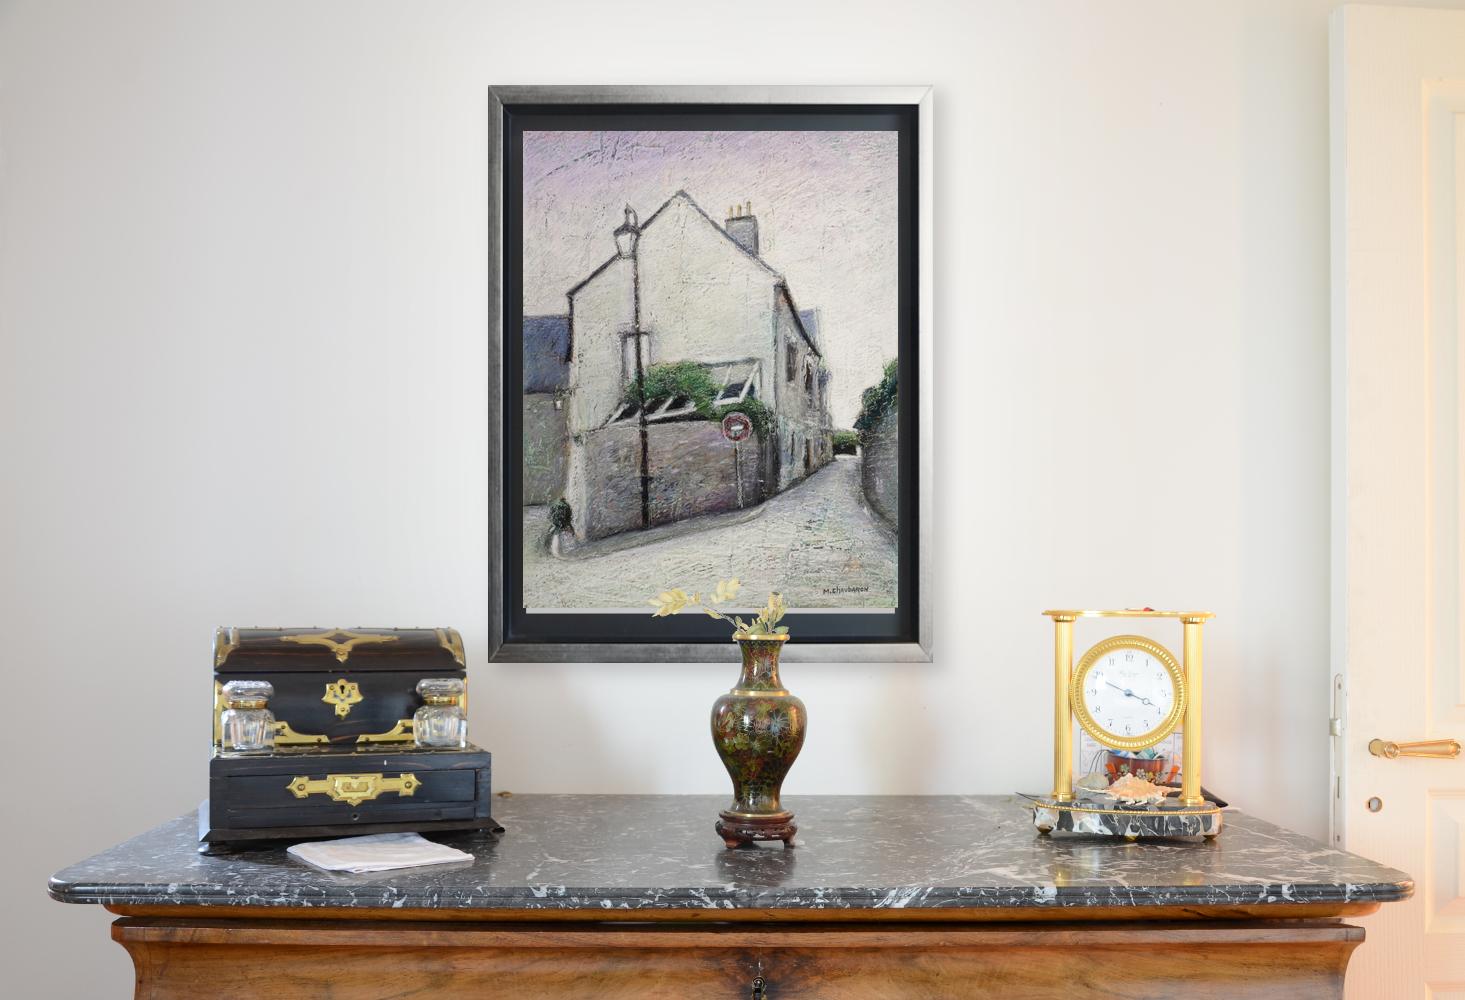 Eckhaus mit Wand- und Veranda, Lampenständer, Wrong-Way-Schild und Uphill Street – Painting von Marc Chaubaron